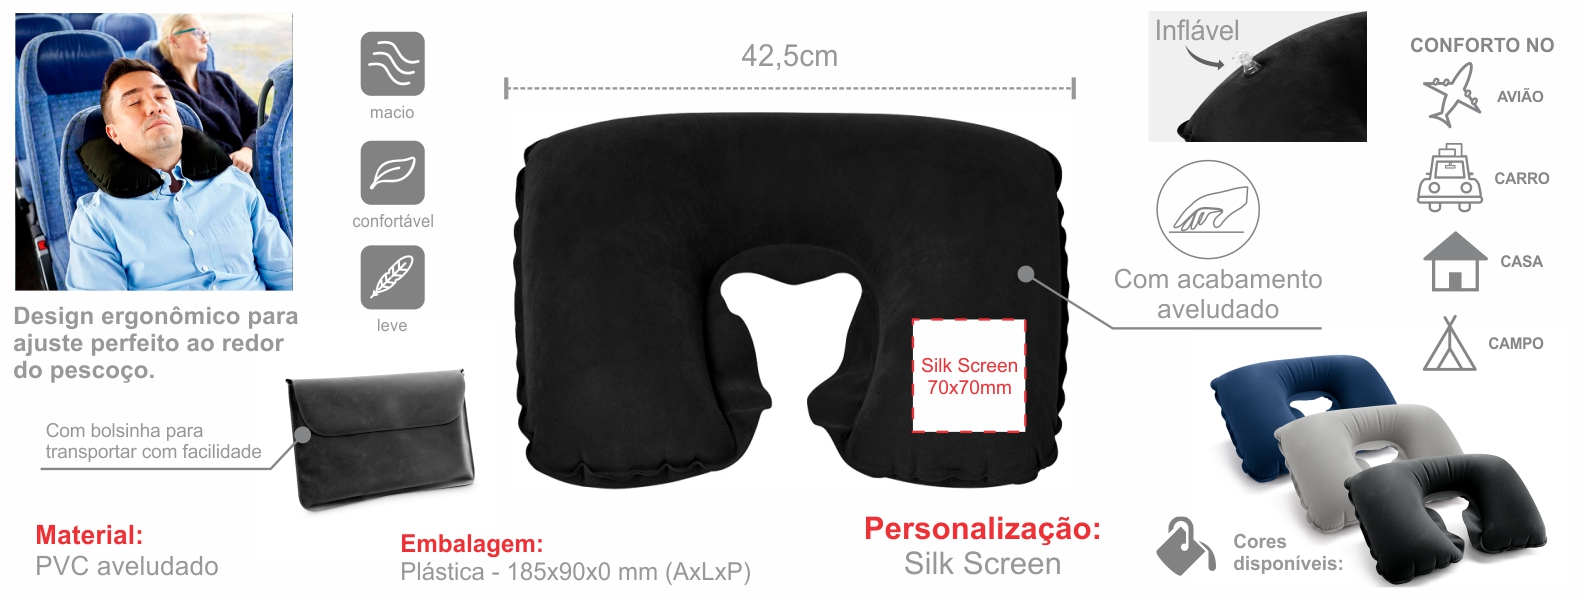 Almofada de pescoço inflável em PVC preto. Conta com acabamento aveludado e bolsa.